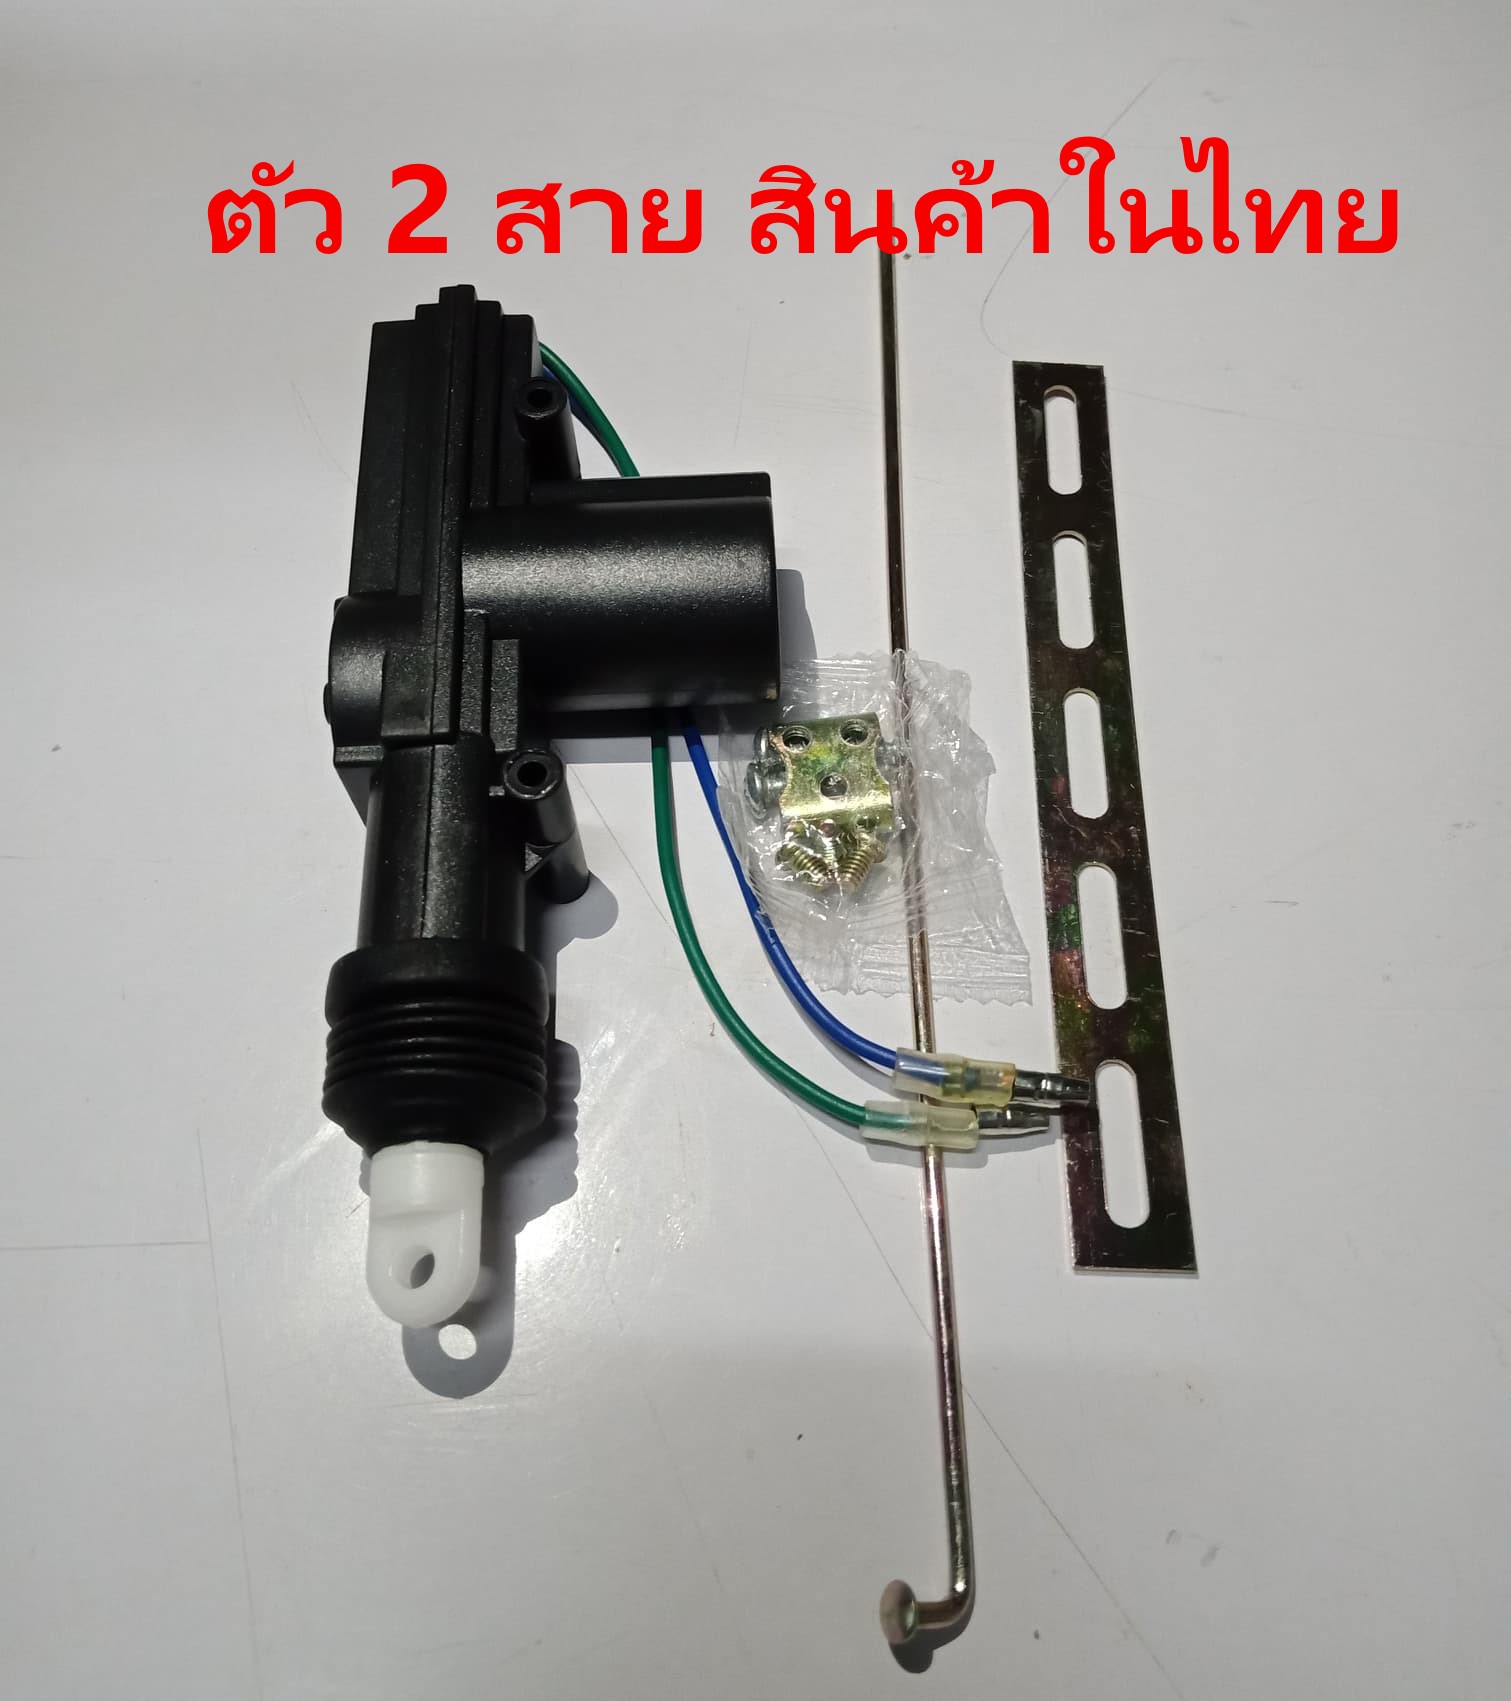 มอเตอร์ปืนเซ็นทรัลล็อค 2 สาย รุ่นหัวขาว ขนาดมาตรฐาน ของใหม่ ราคาถูก (สินค้าในไทย พร้อมส่ง)